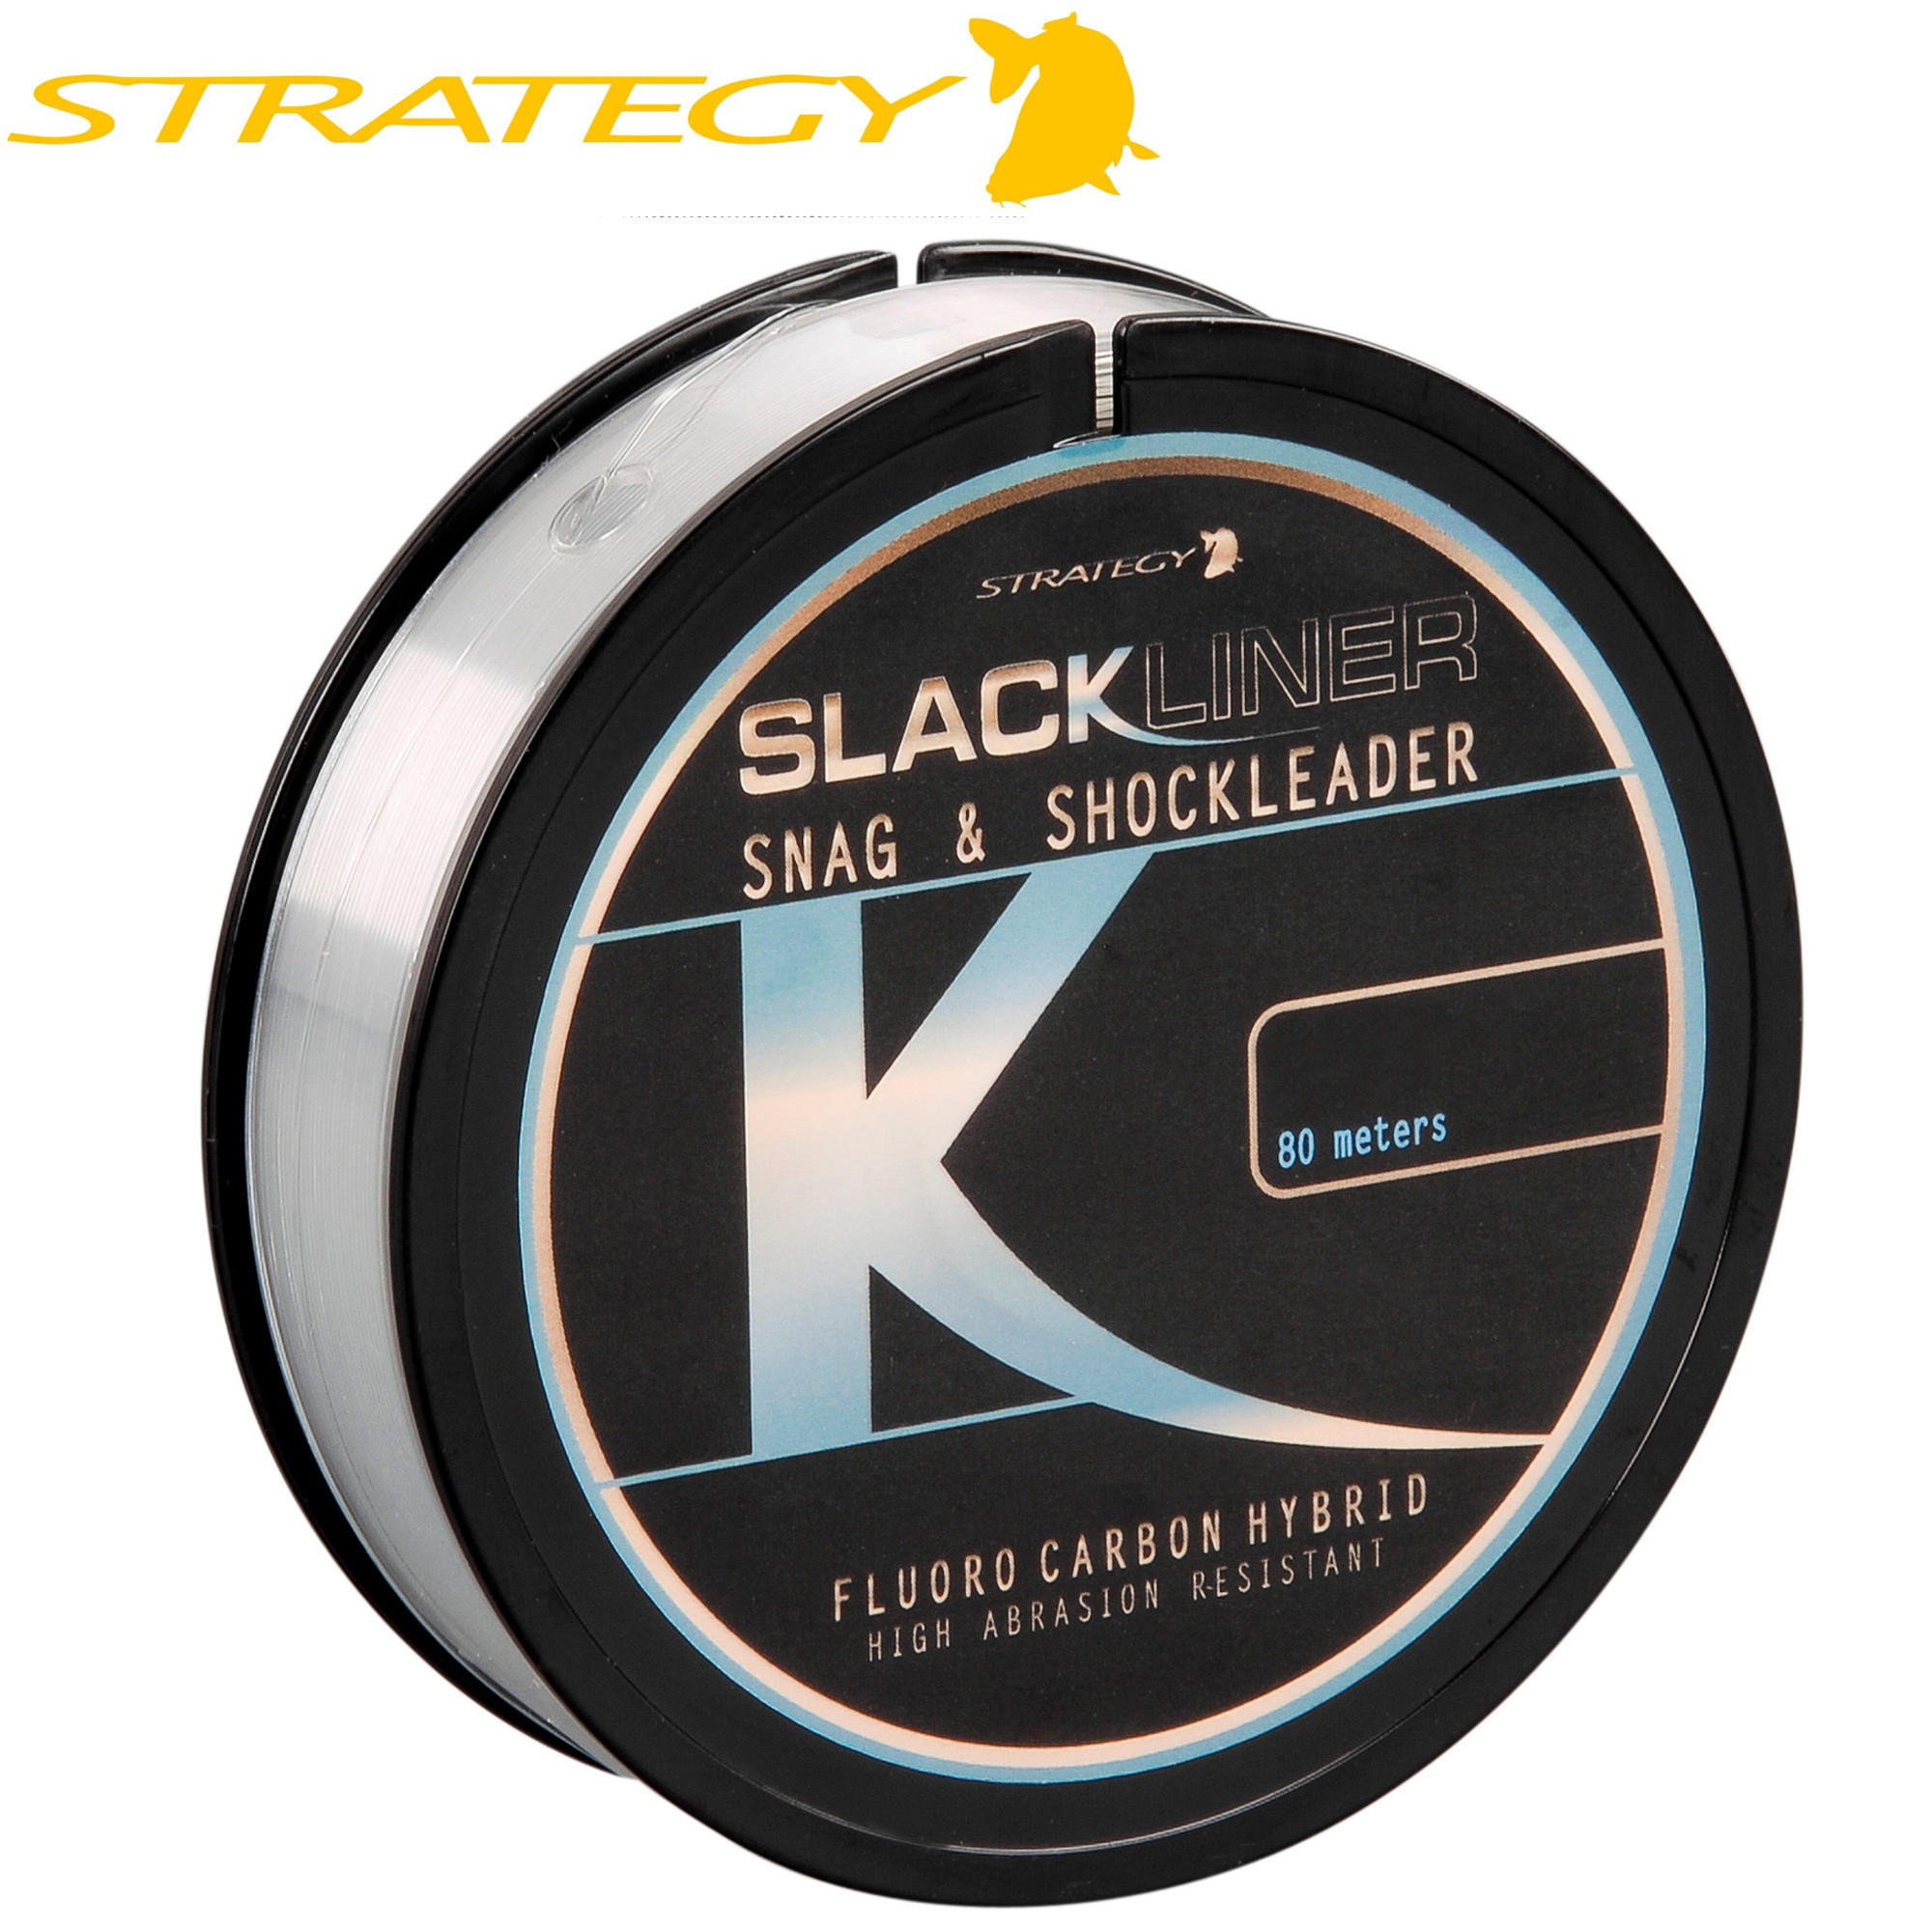 0,10€/1m Strategy Slackliner Snag & Shock Leader Fluoro Carbon Hybrid 80m 